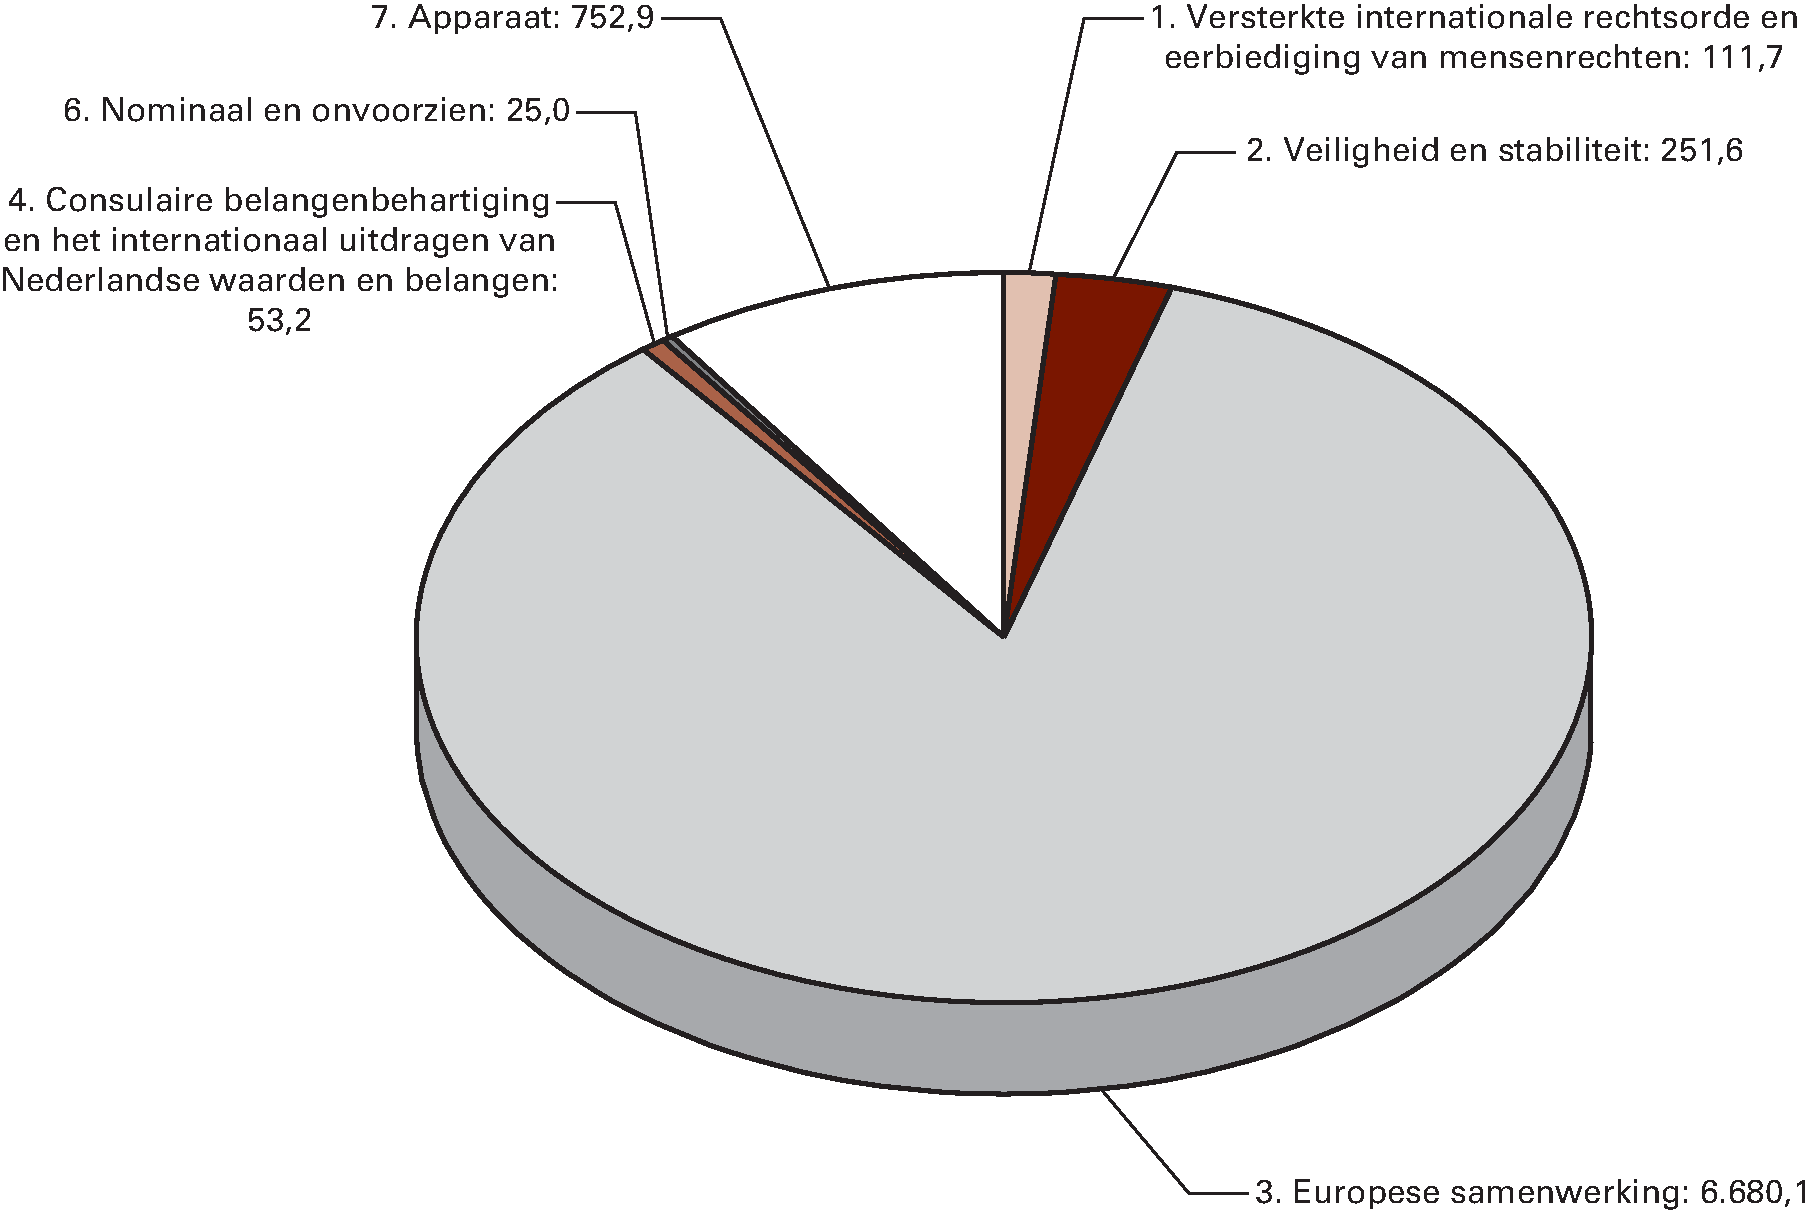 Begrote uitgaven naar beleidsterrein voor 2015 (in EUR 				  miljoen)